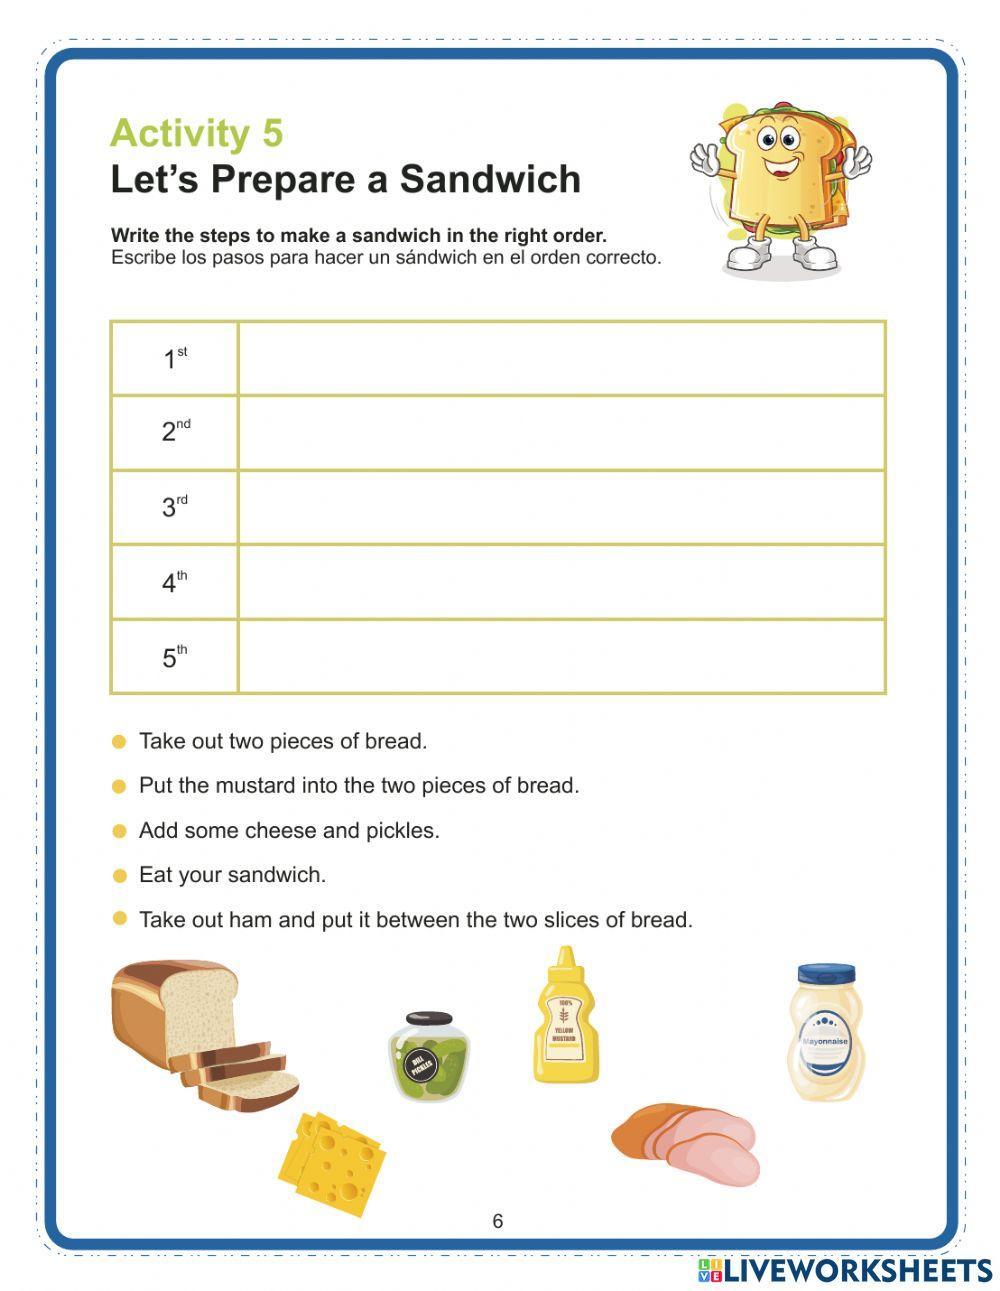 Let’s Prepare a Sandwich